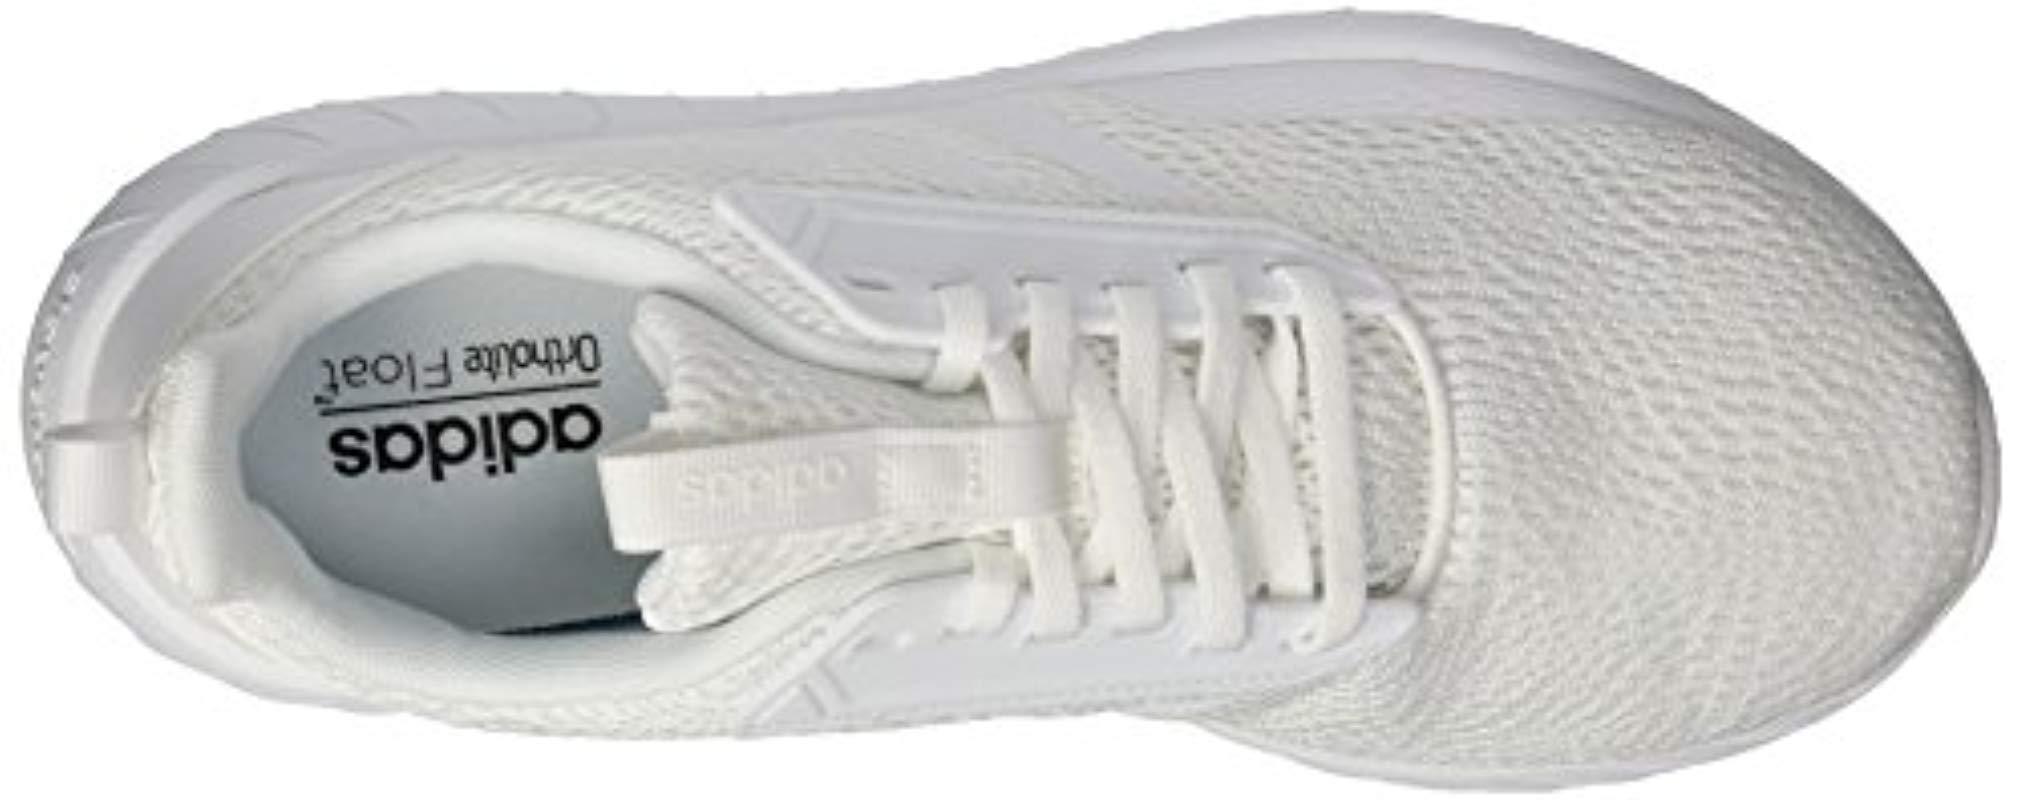 questar drive adidas white